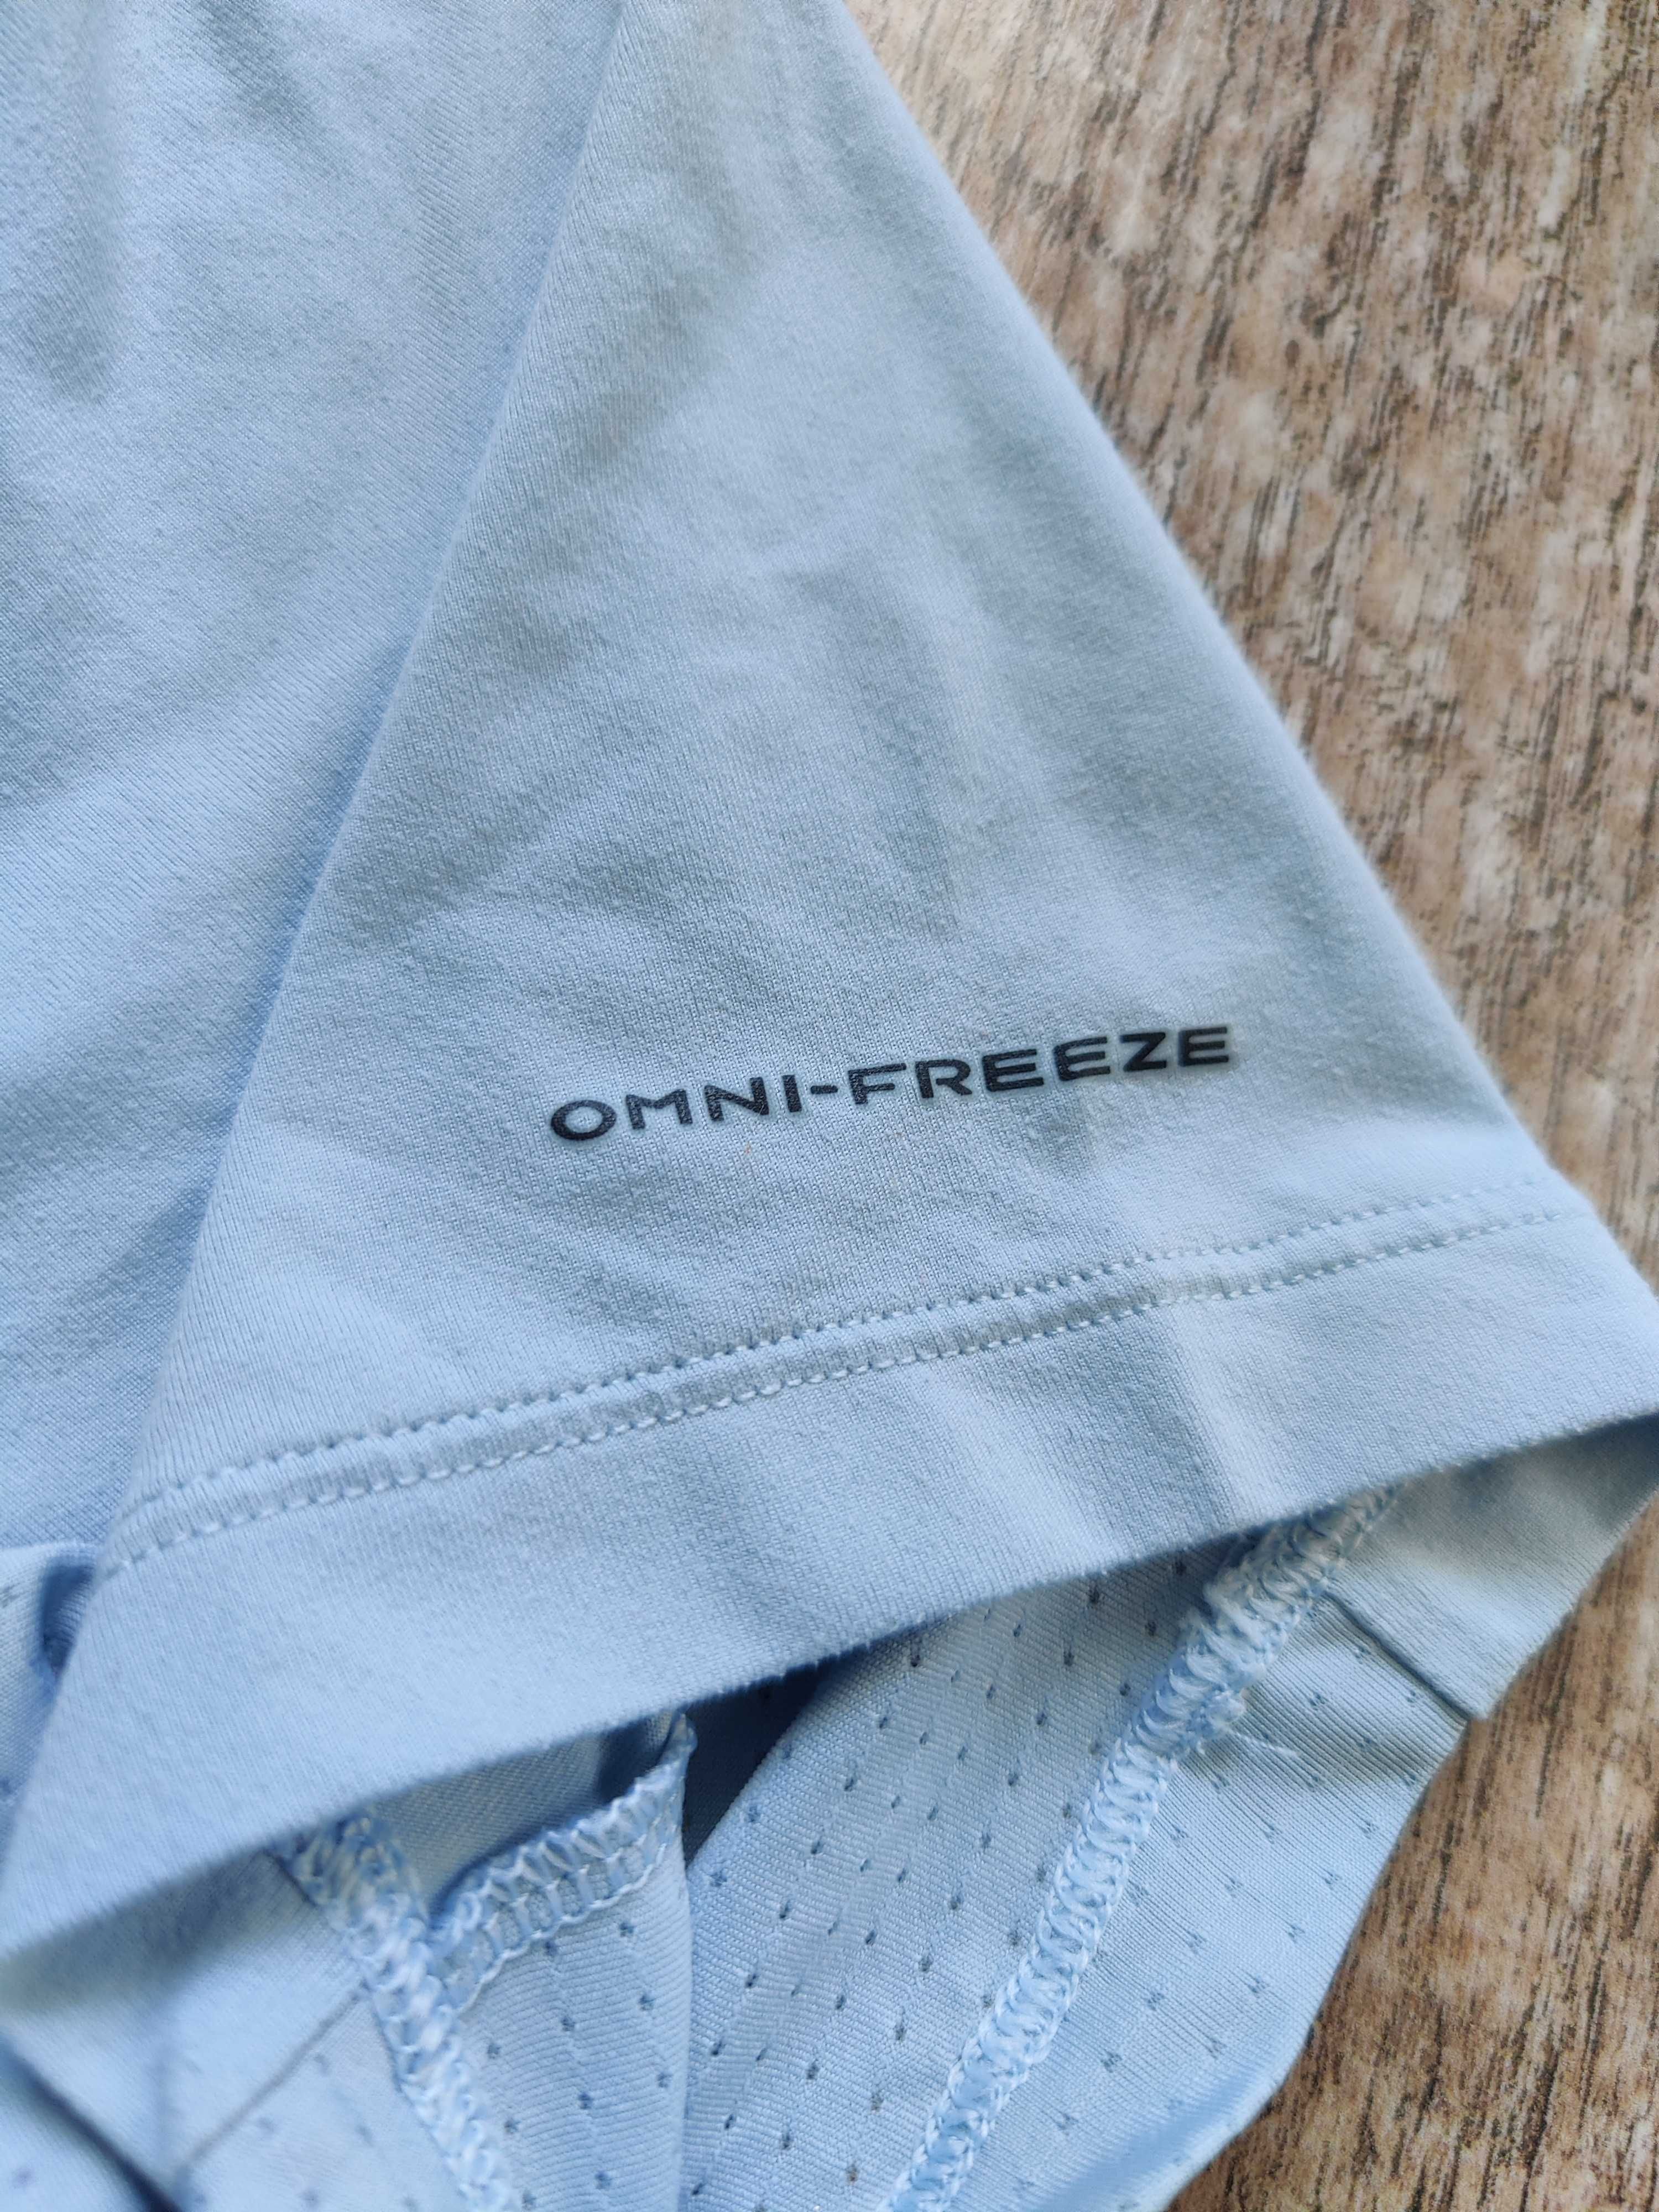 Продам футболку Columbia omni freeze